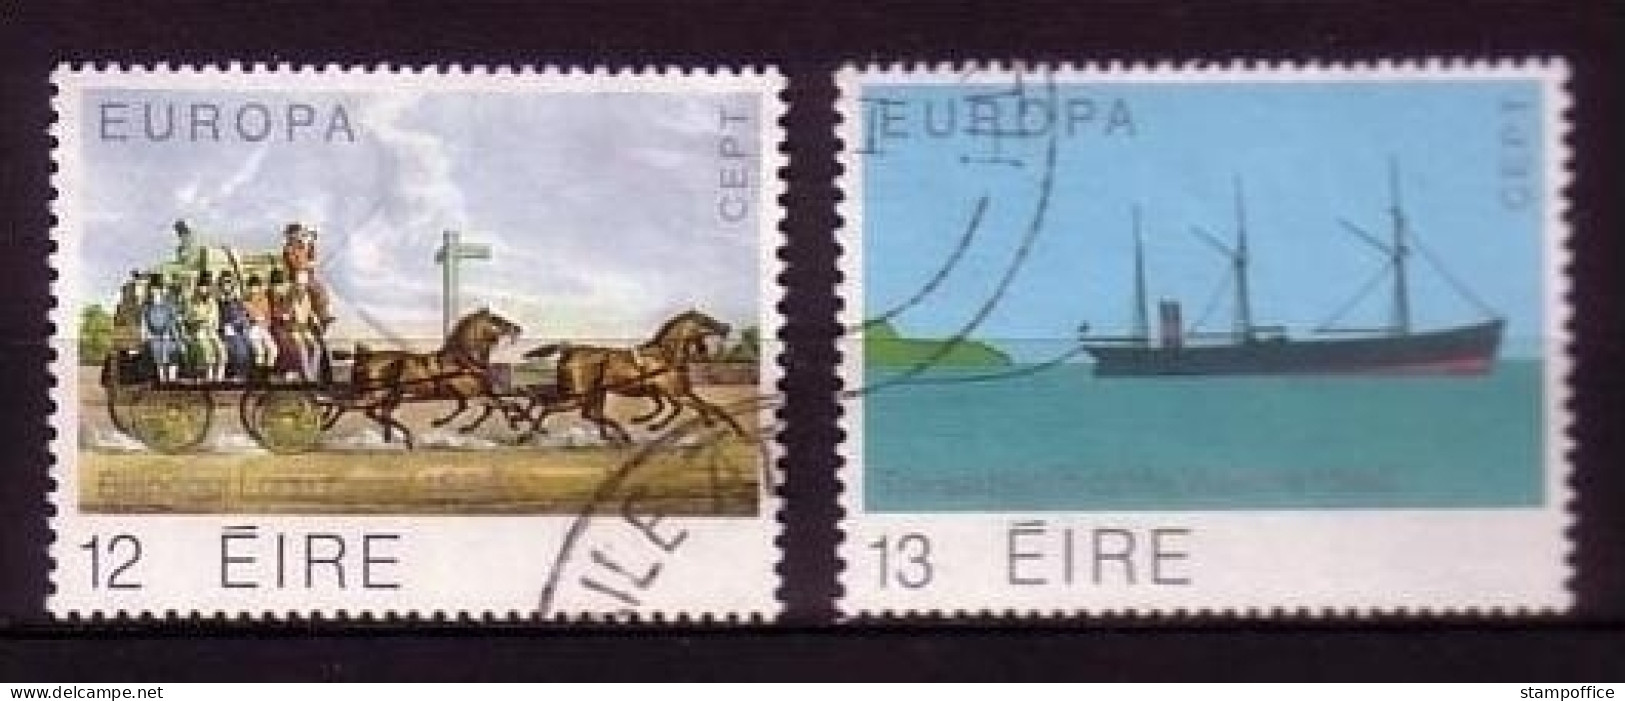 IRLAND MI-NR. 412-413 GESTEMPELT(USED) EUROPA 1979 POST- Und FERNMELDEWESEN - 1979